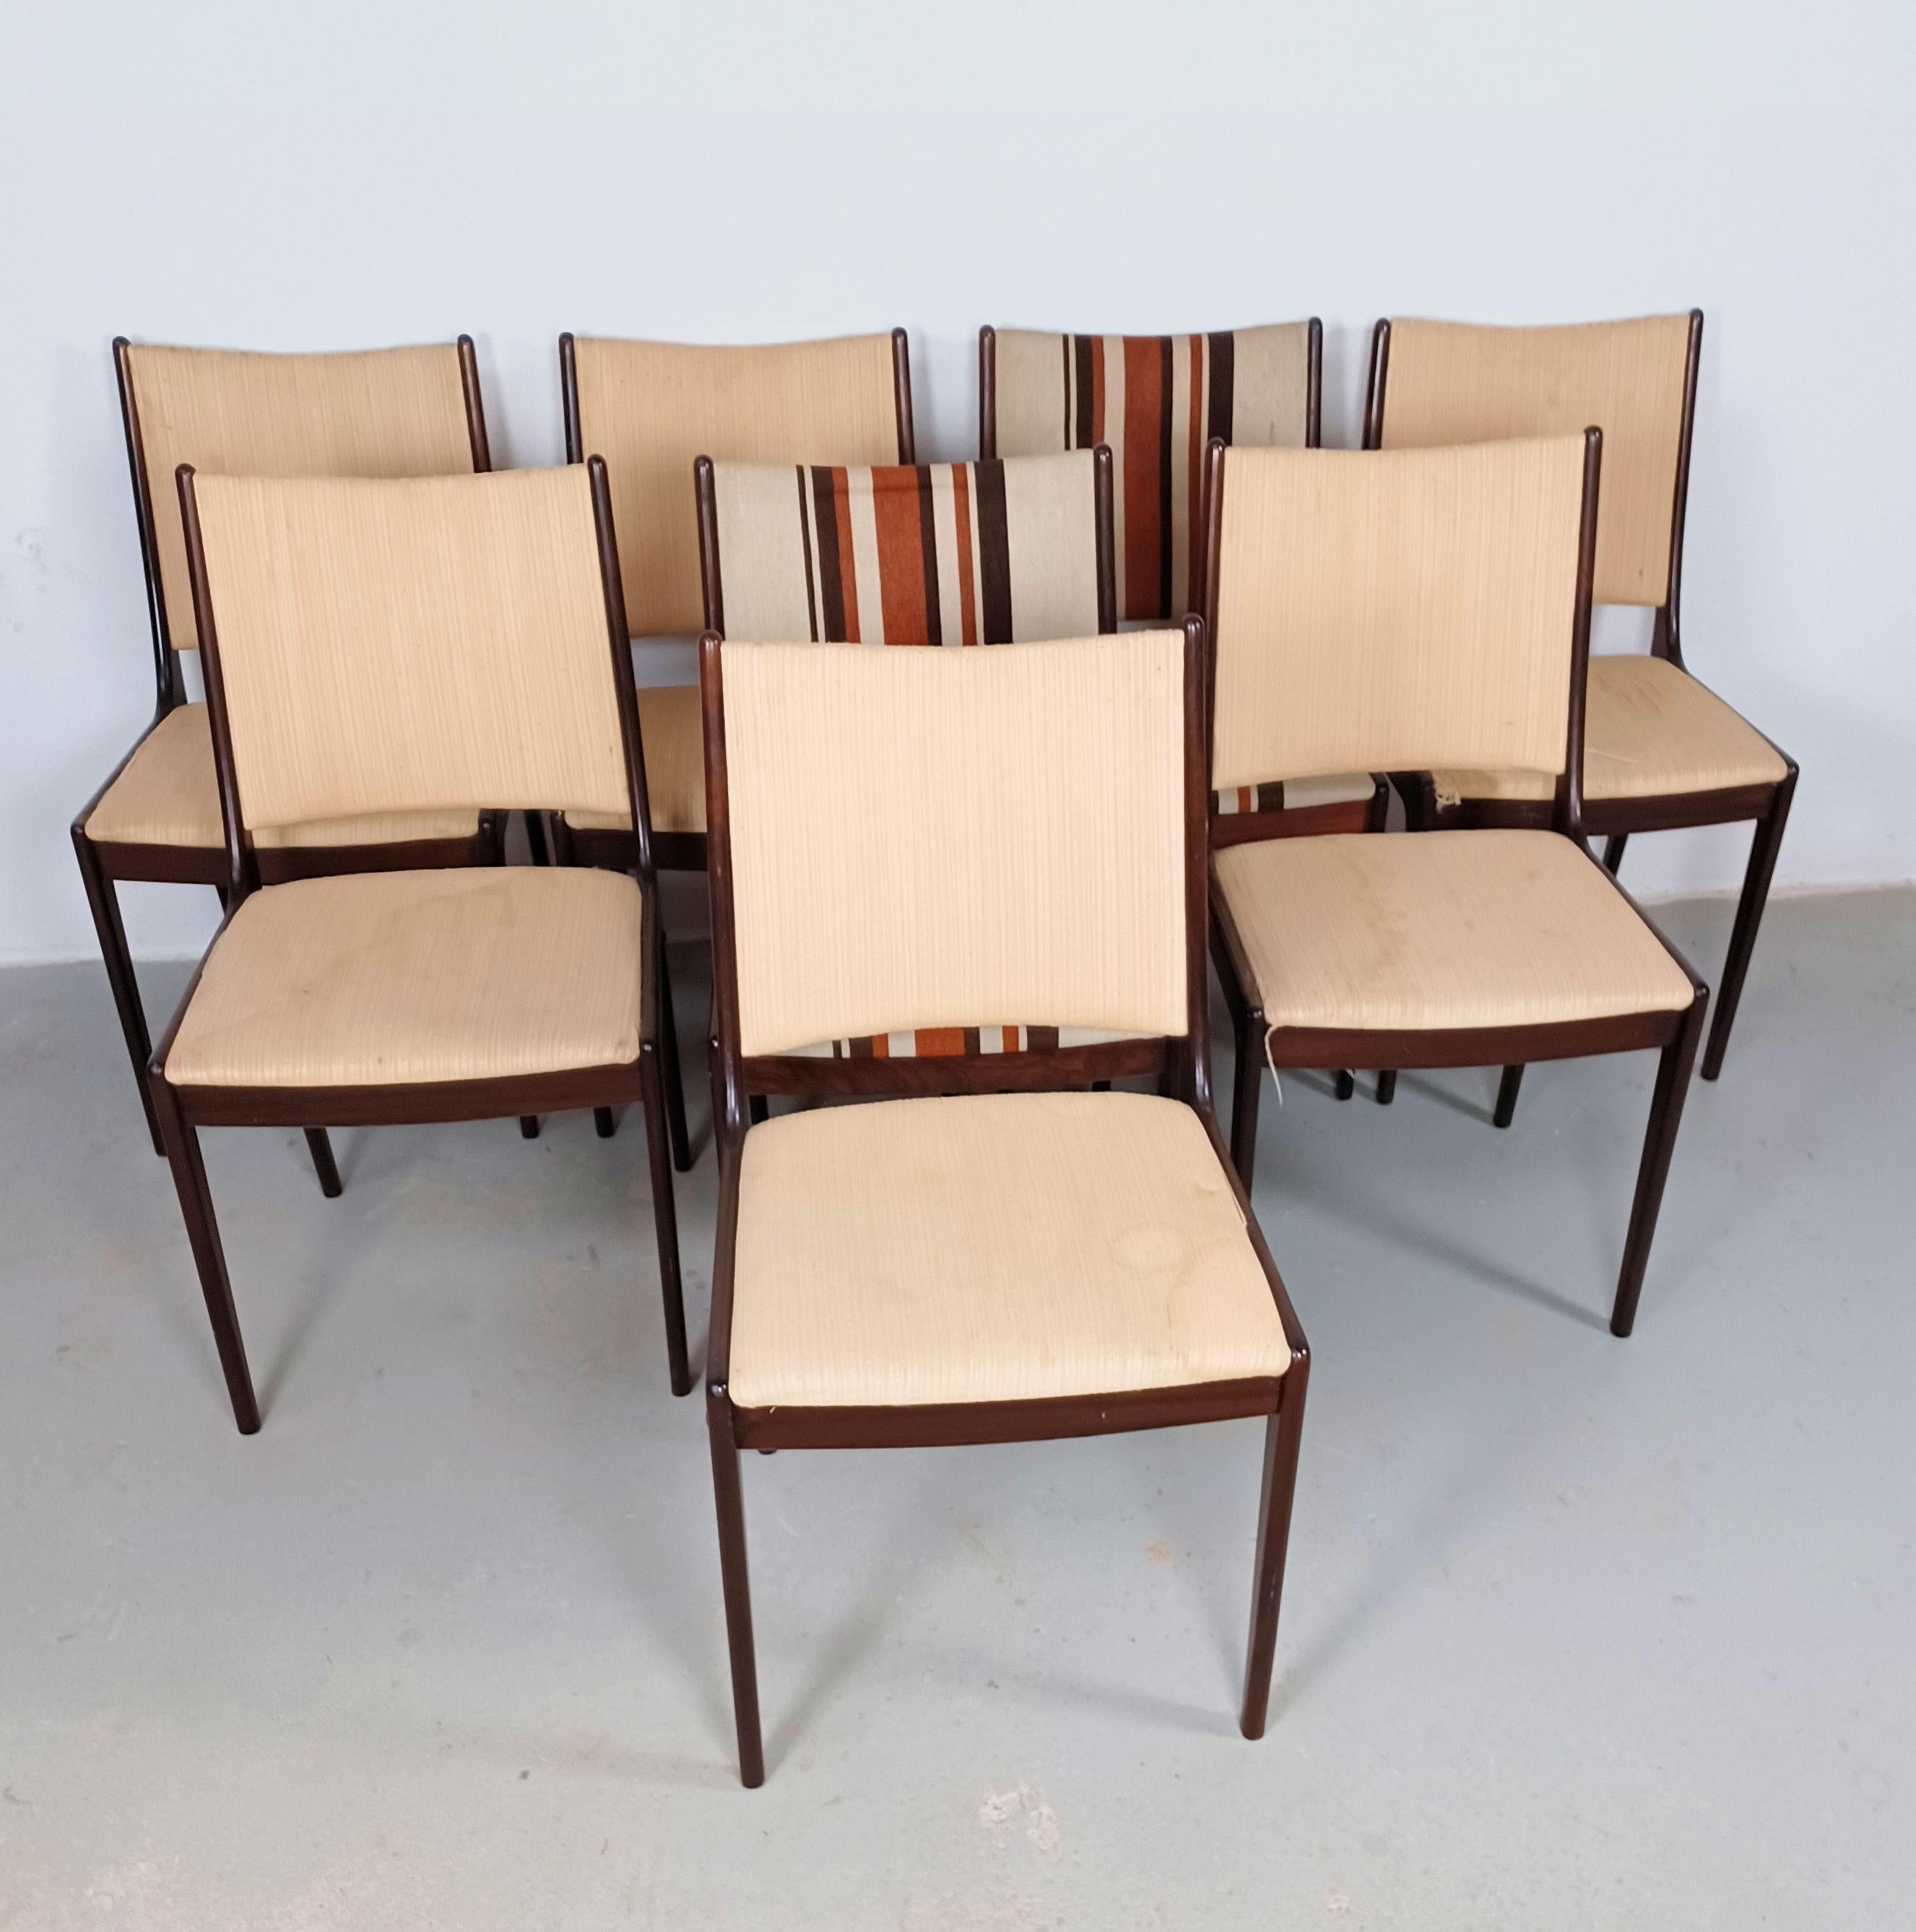 Ensemble de huit chaises de salle à manger Johannes Andersen des années 1960 en acajou, restaurées, fabriquées par Uldum Møbler, Danemark, y compris un rembourrage personnalisé.

L'ensemble de chaises de salle à manger présente un design simple et